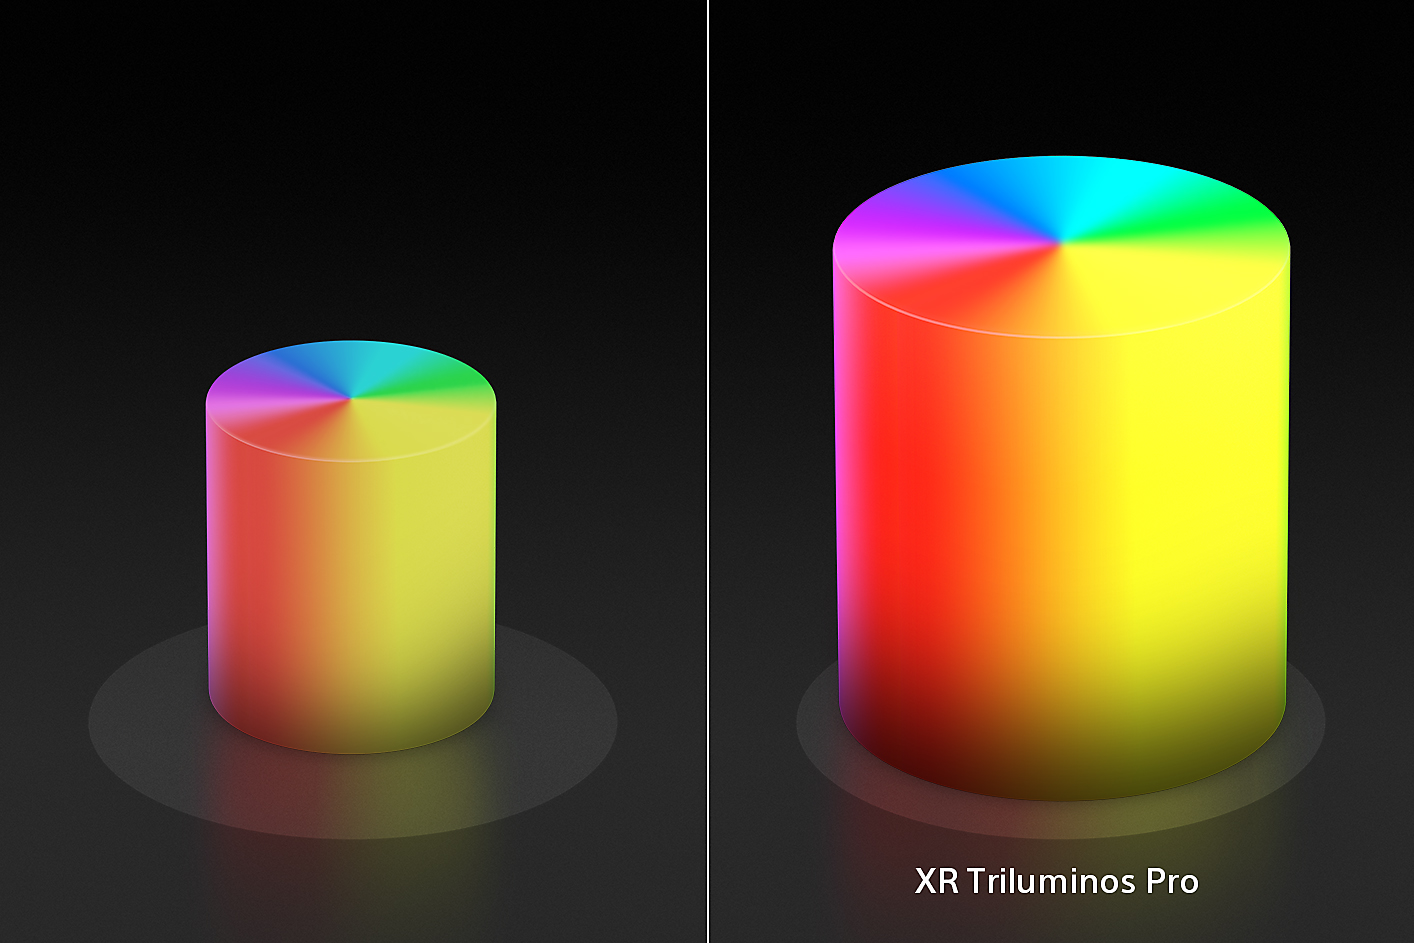 Gesplitst scherm met twee kaarsvormige kleurkegels, met een kleinere links en een grotere rechts met de verbeterde kleuren en textuur van XR Triluminos Pro